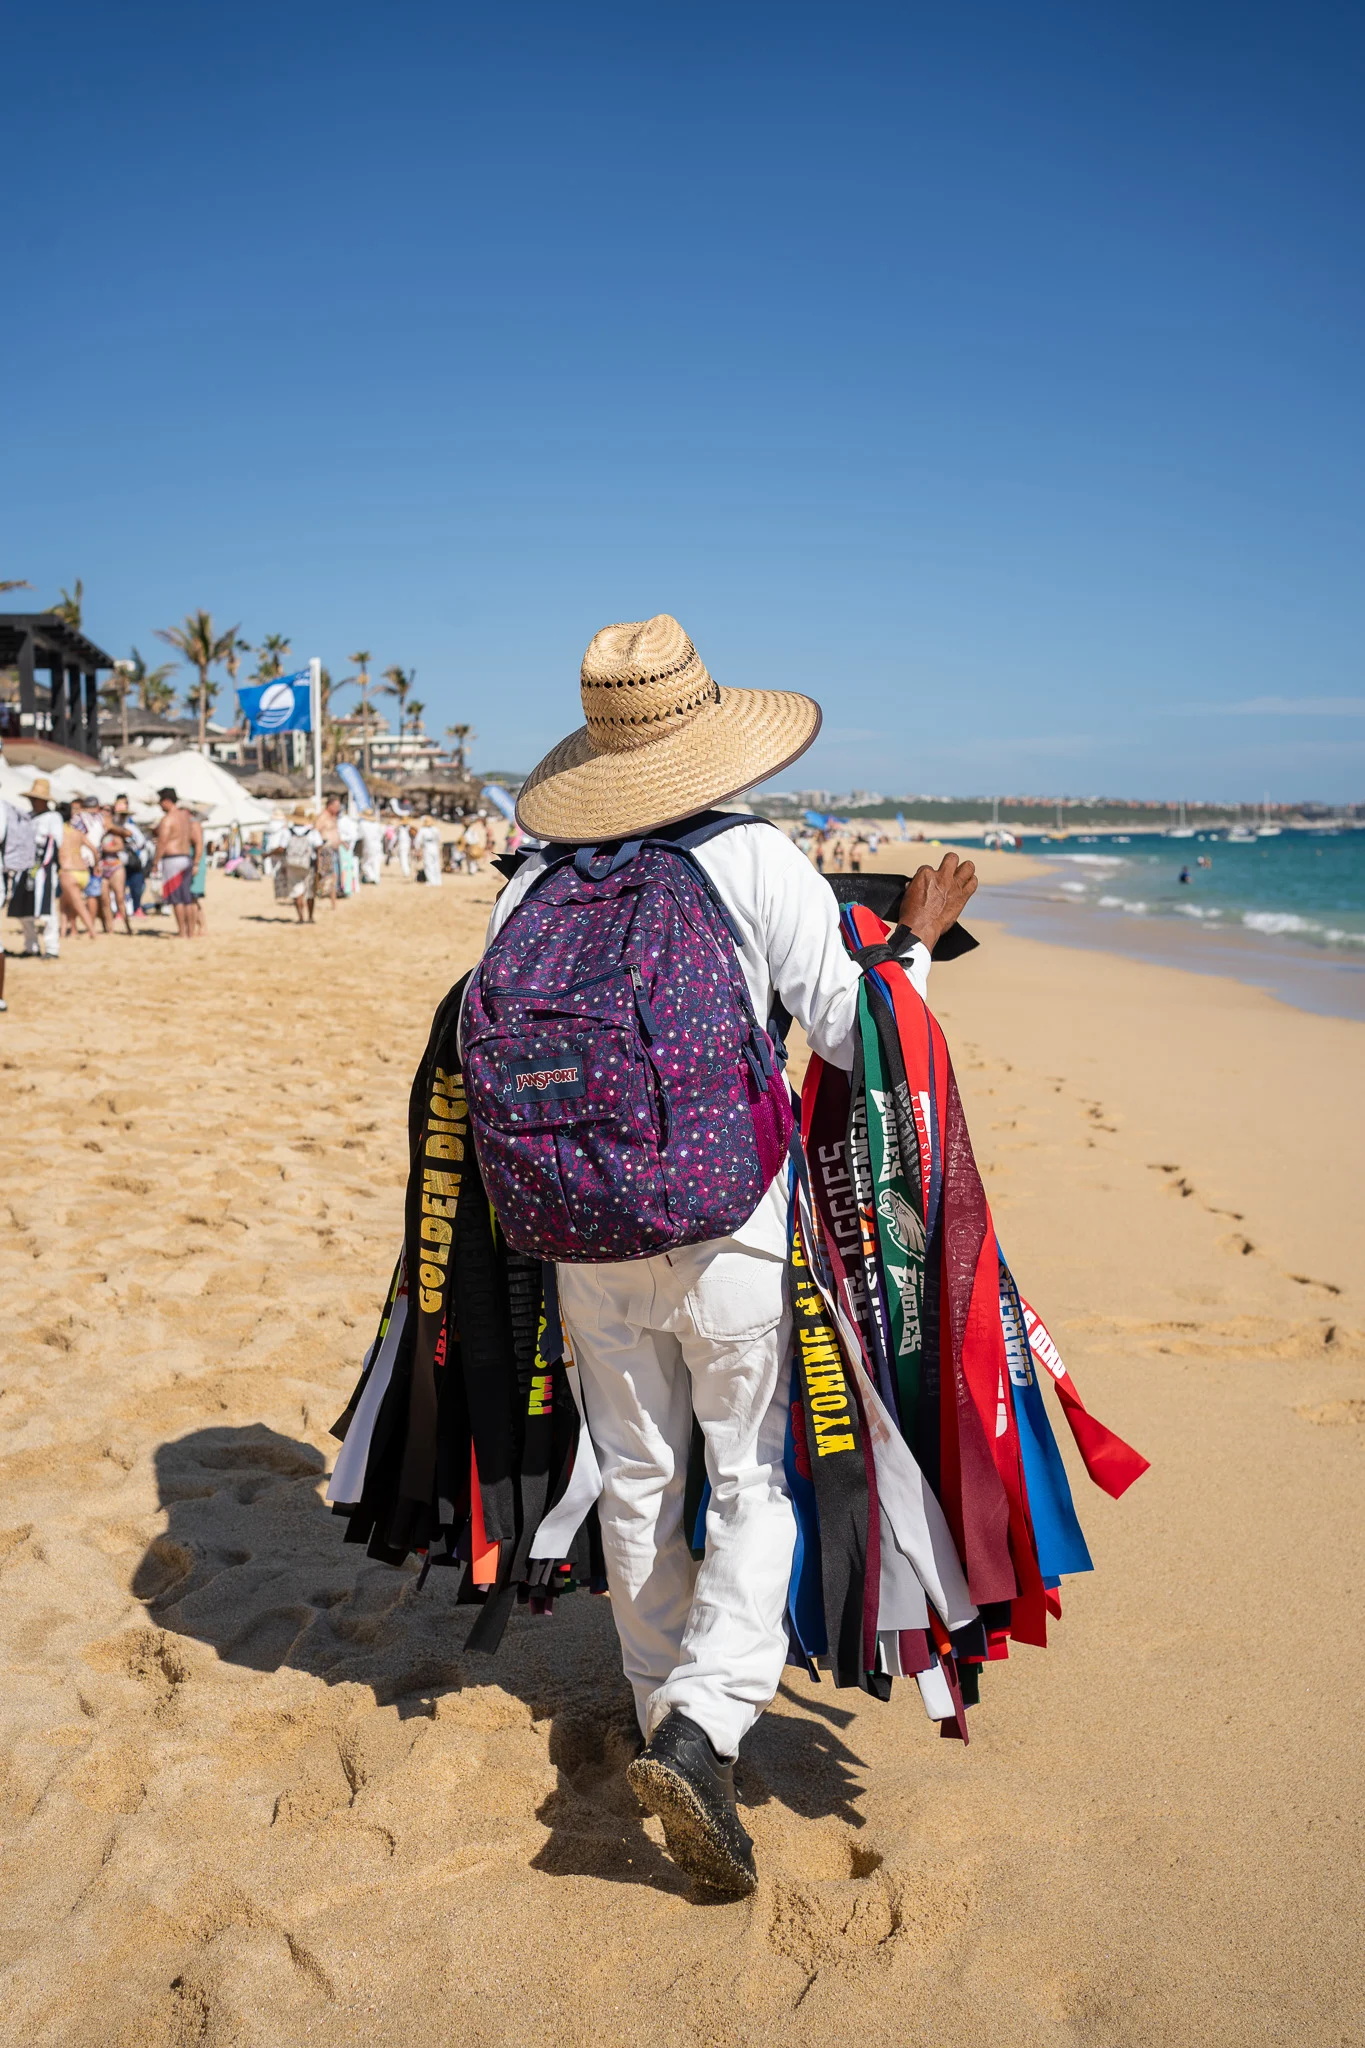 Cabo San Lucas Beach bandana vendor mexico